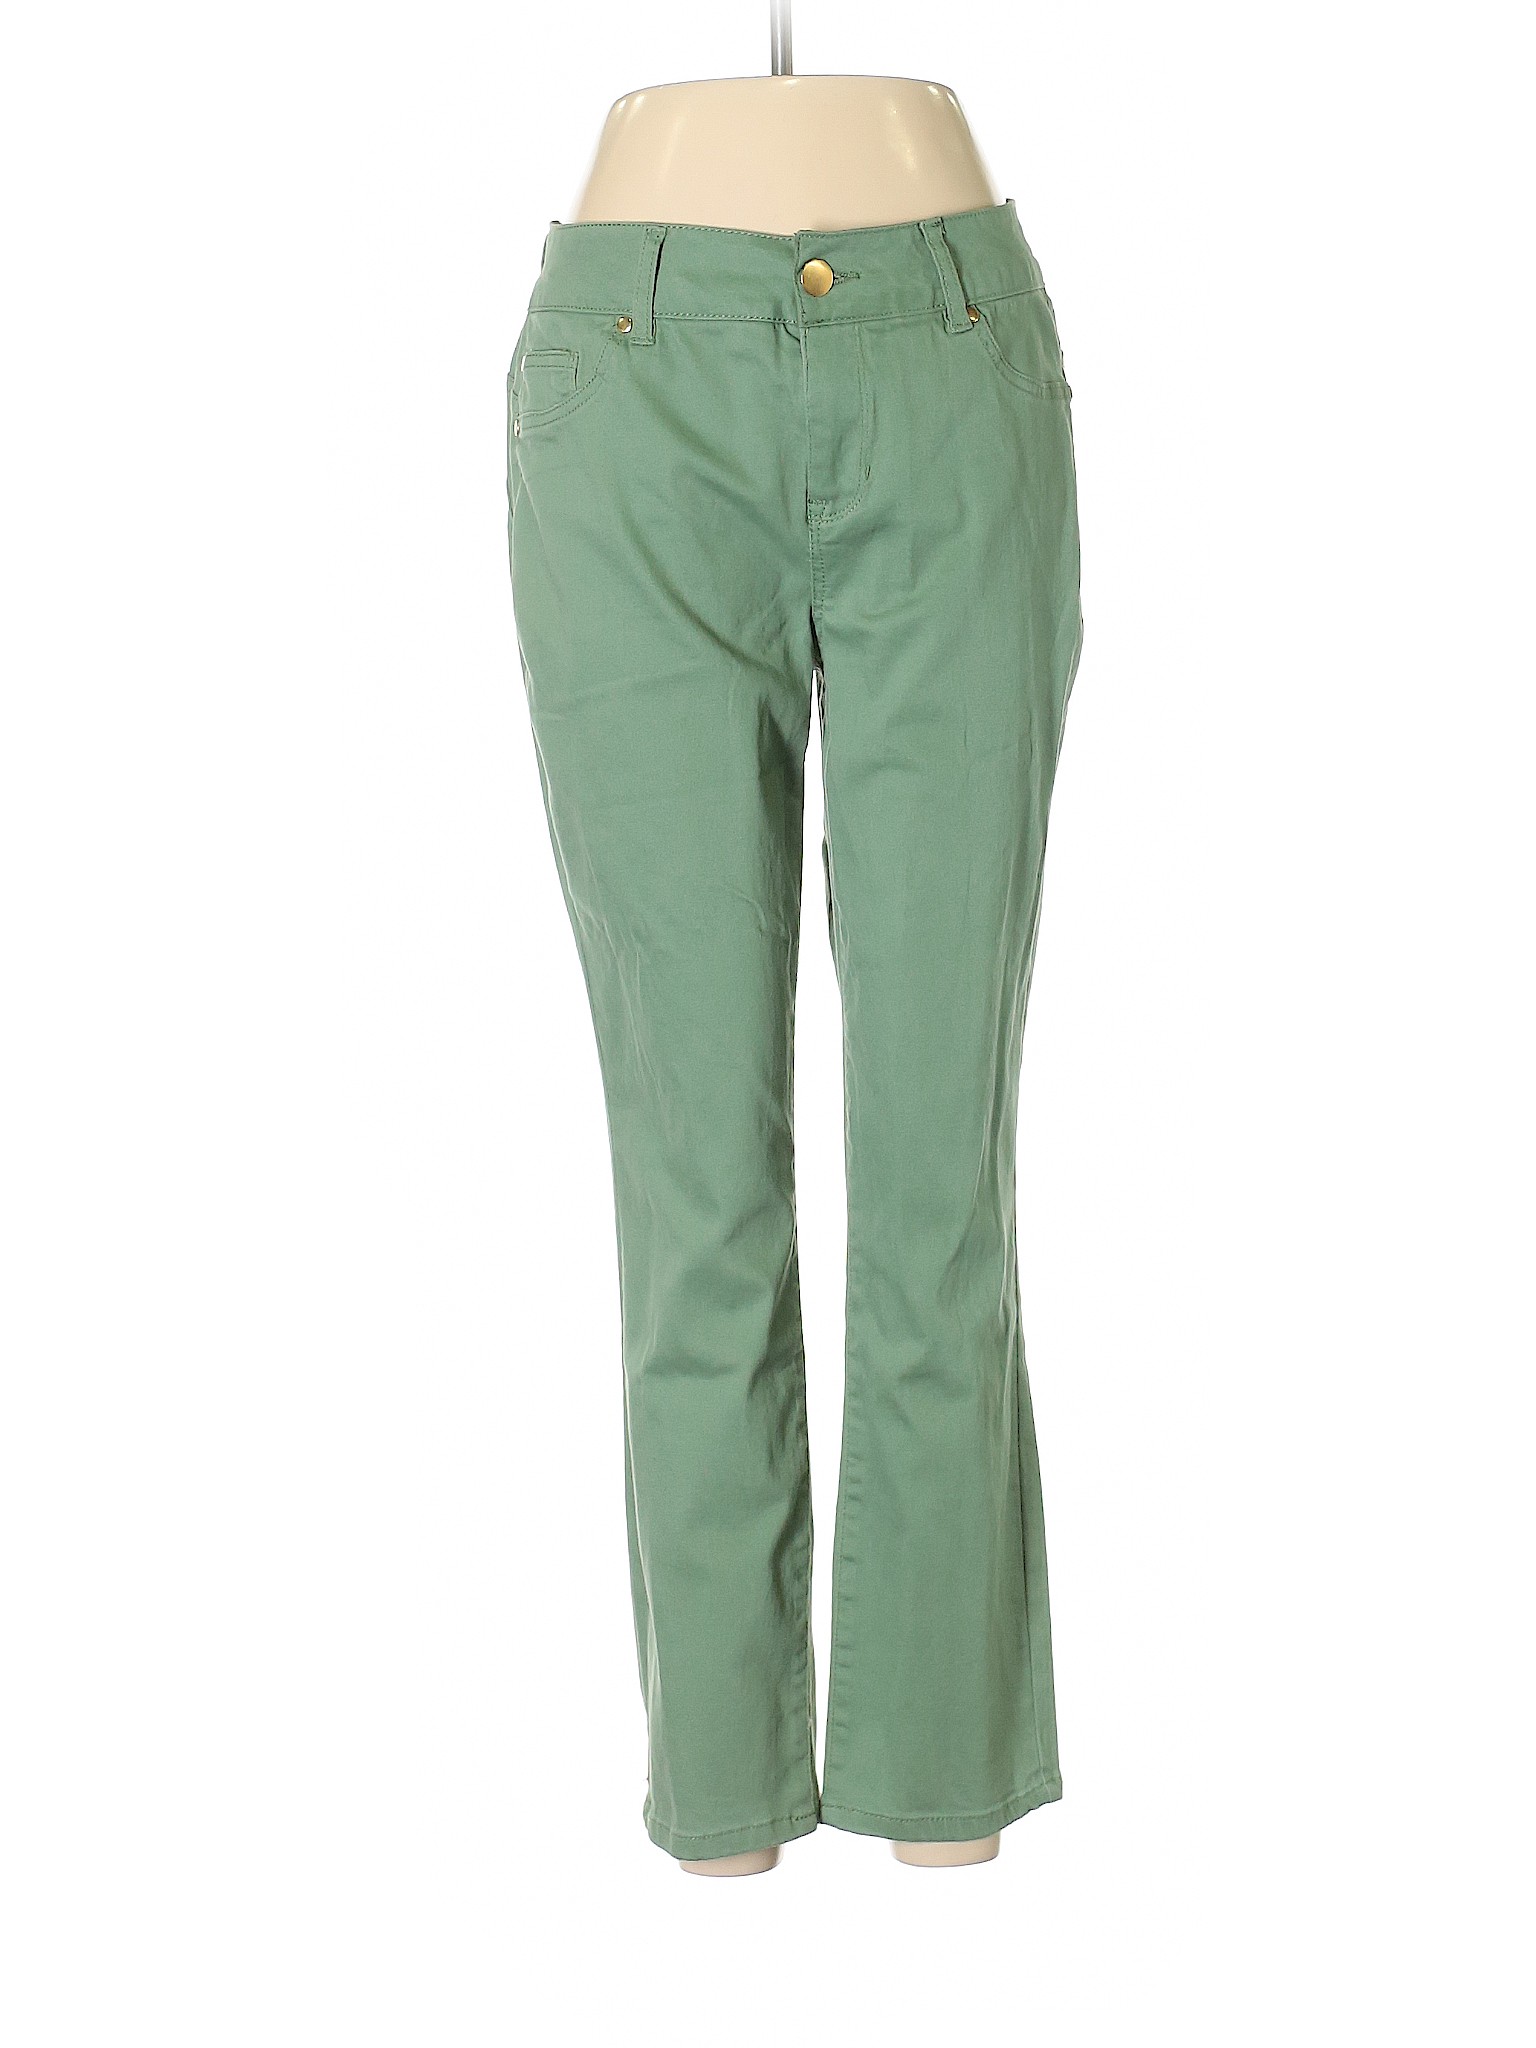 IMAN Women Green Jeans 8 | eBay